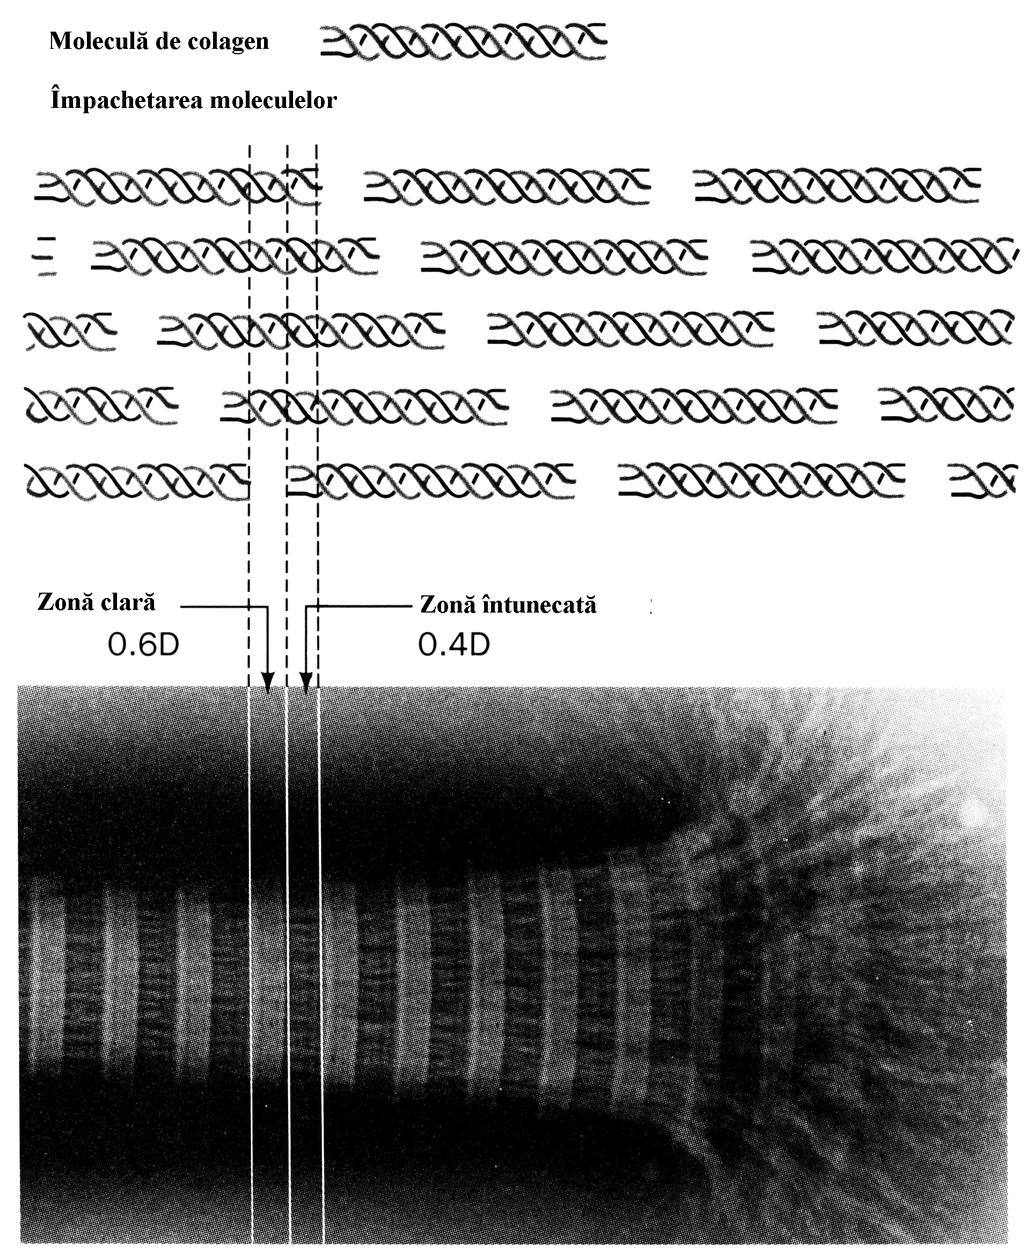 Figura 3.44 Aspectul bandat al fibrilelor de colagen aşa cum apare la microscopul electronic, se datoreşte aranjamentului supraetajat al moleculelor de colagen, ceea ce conferă un aspect striat.